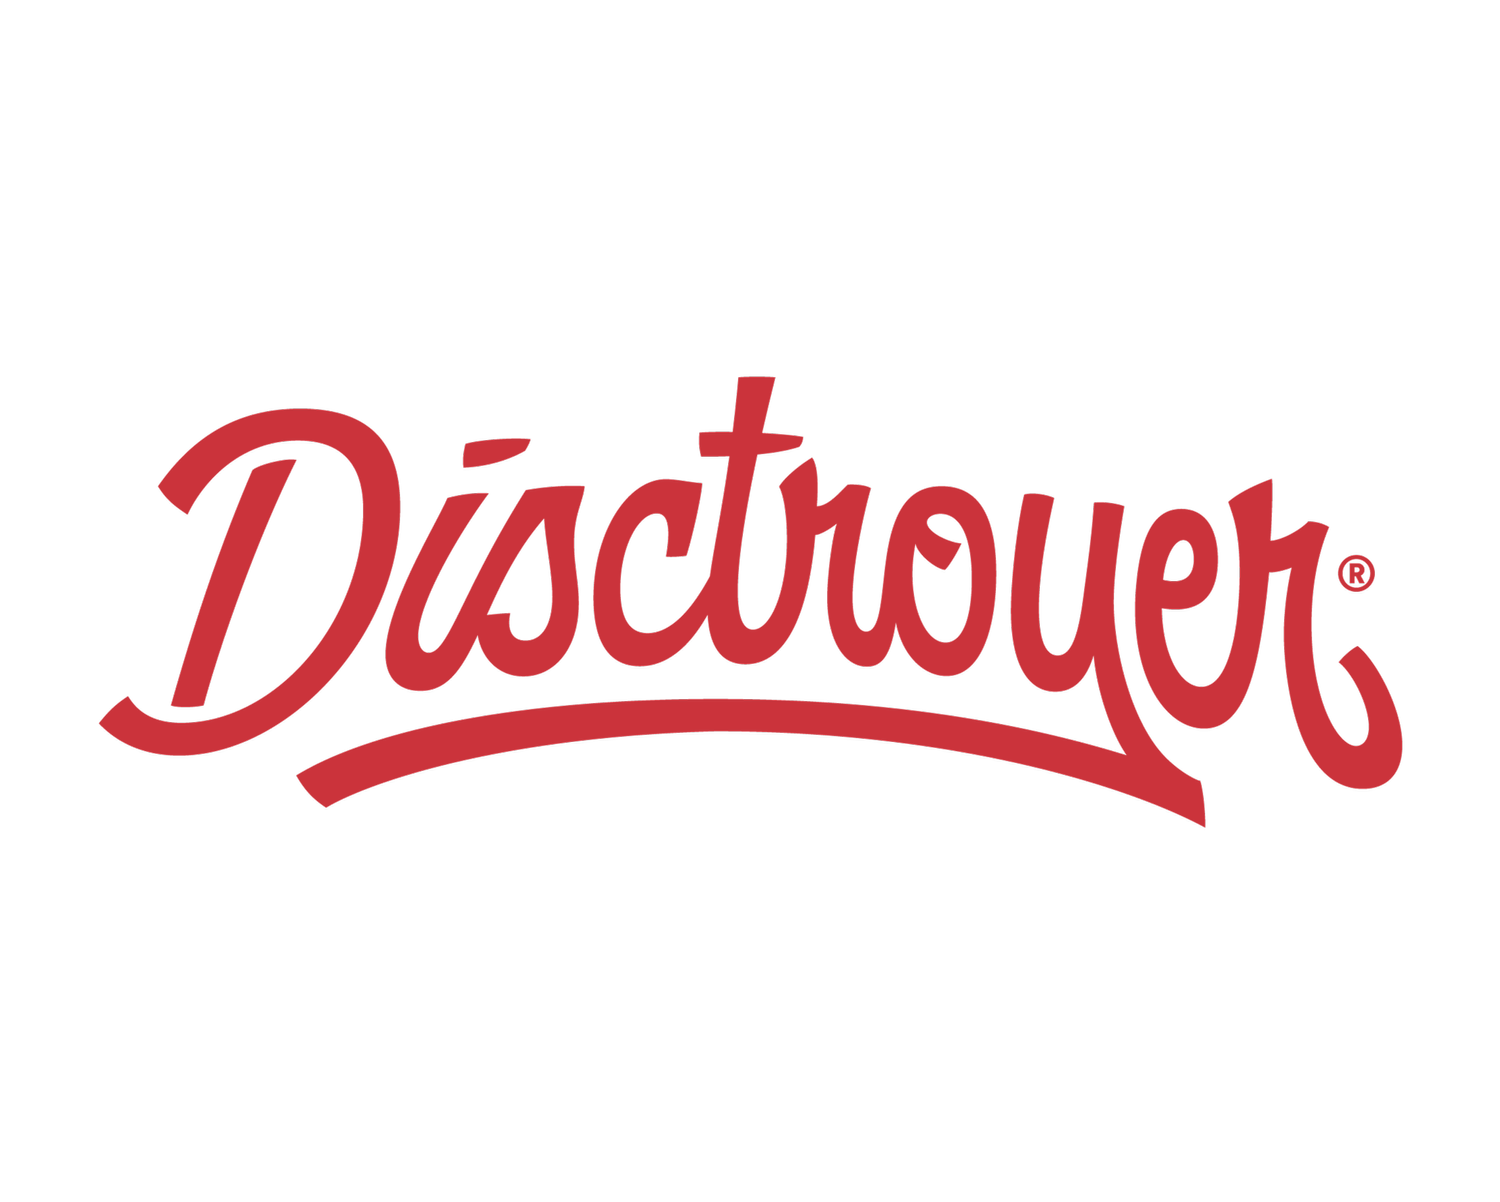 Disctroyer Discs